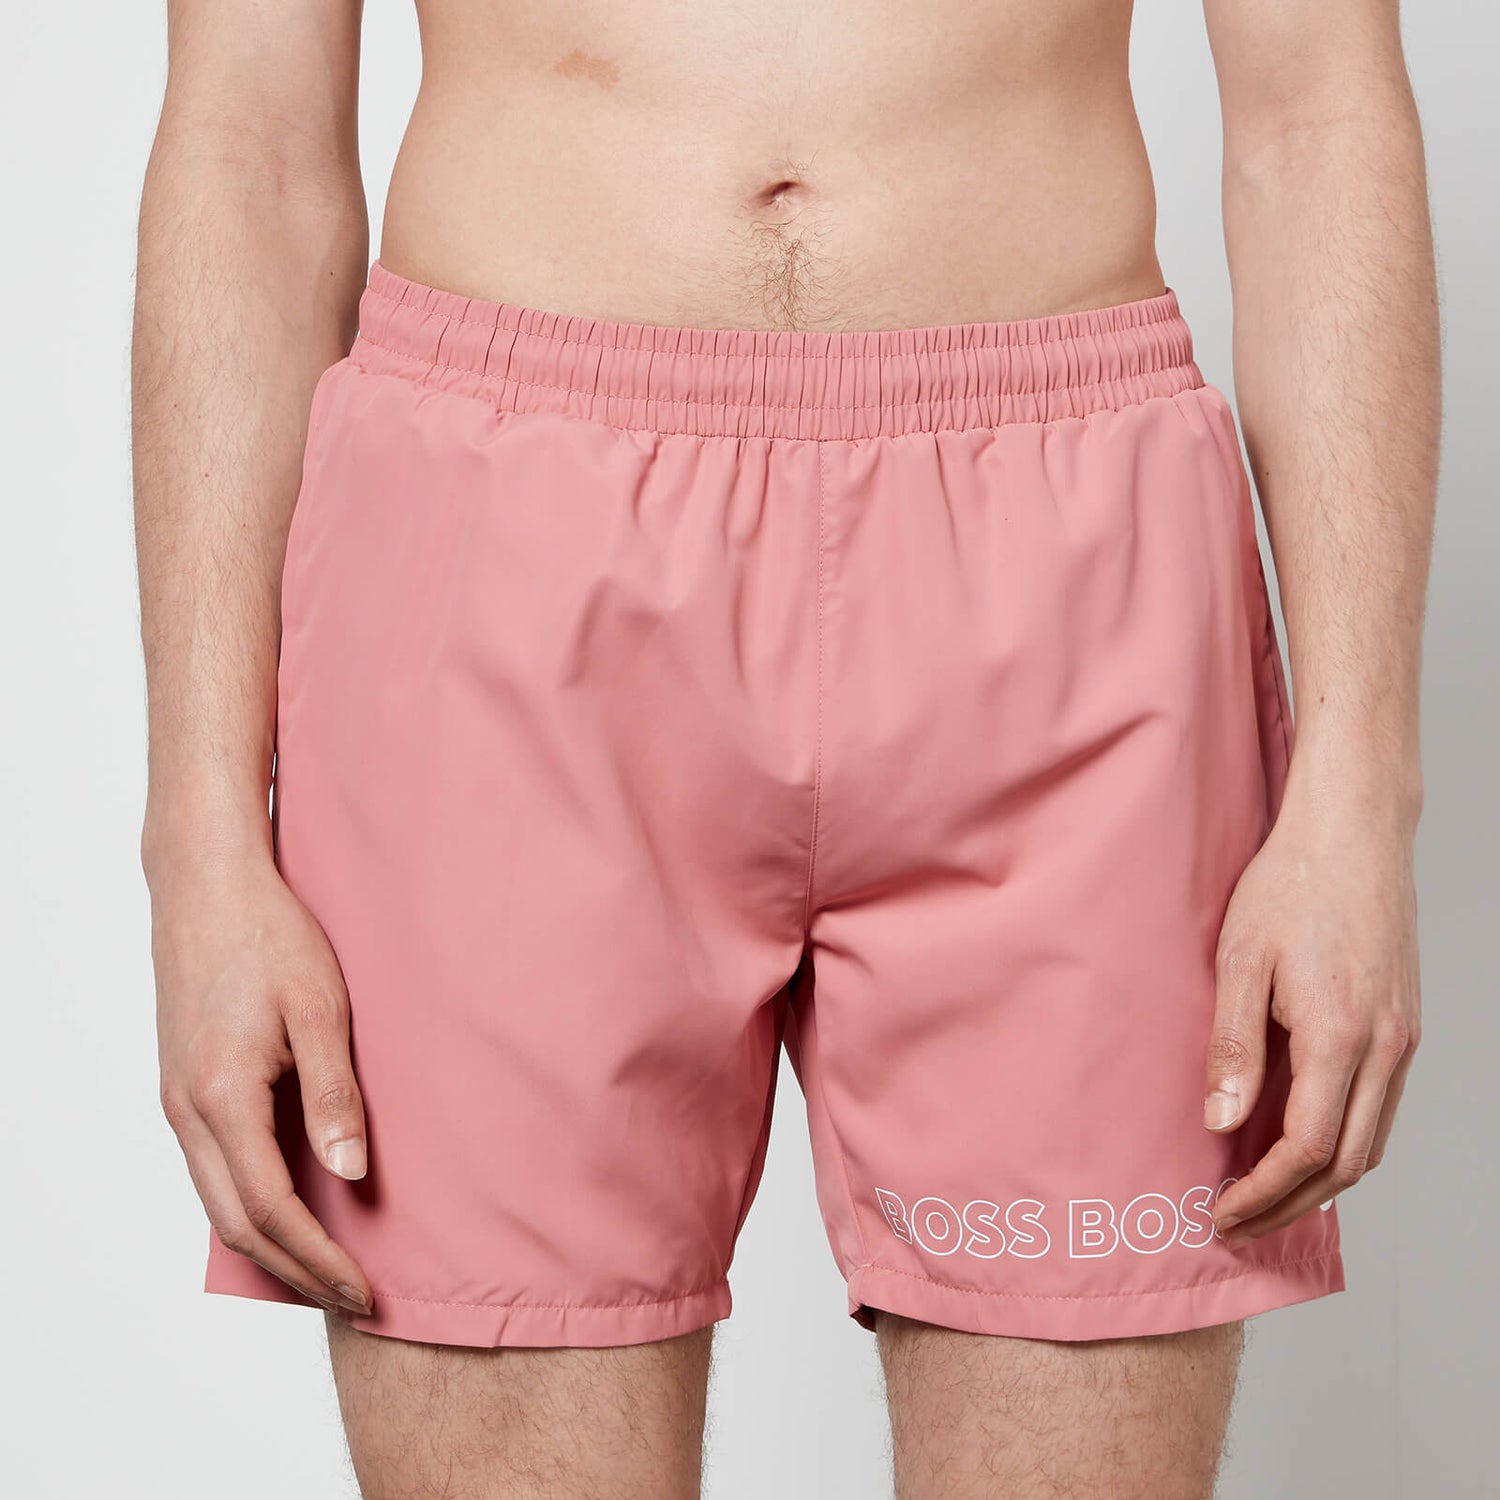 BOSS Bodywear Men's Dolphin Swim Shorts - Open Pink - S